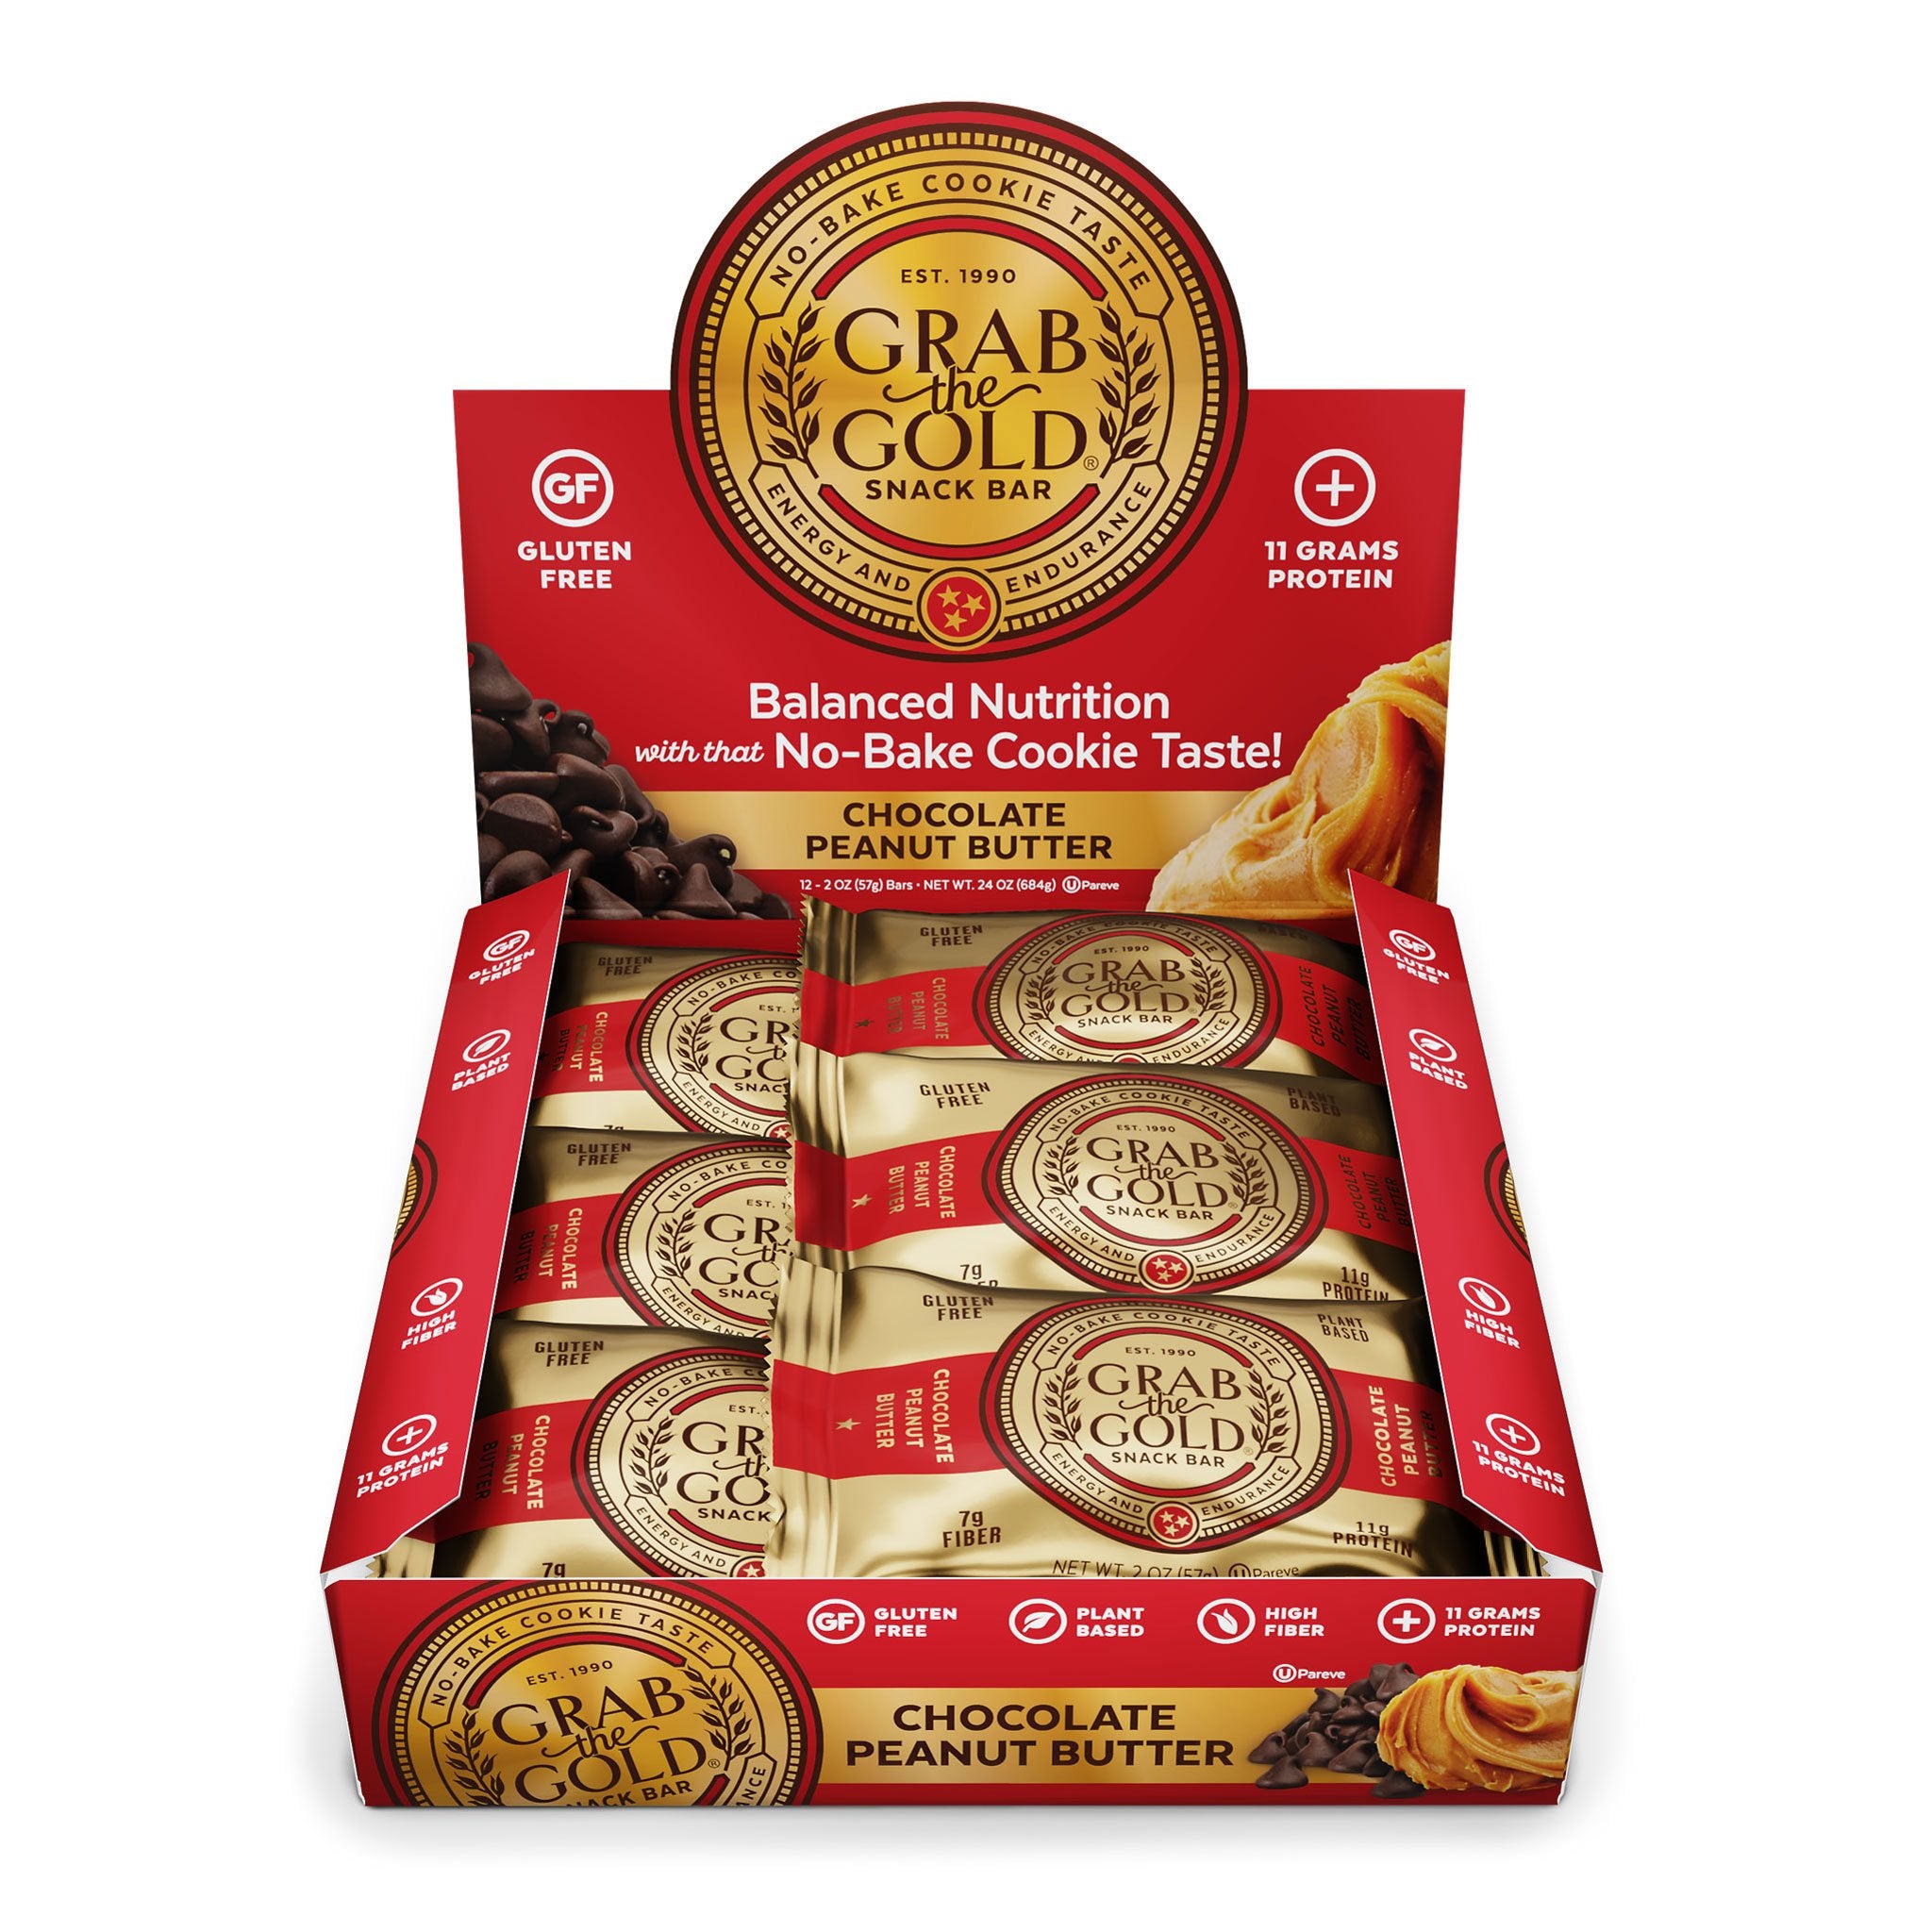 GOLDEN GRAMZ, Chocolate Bar Packaging